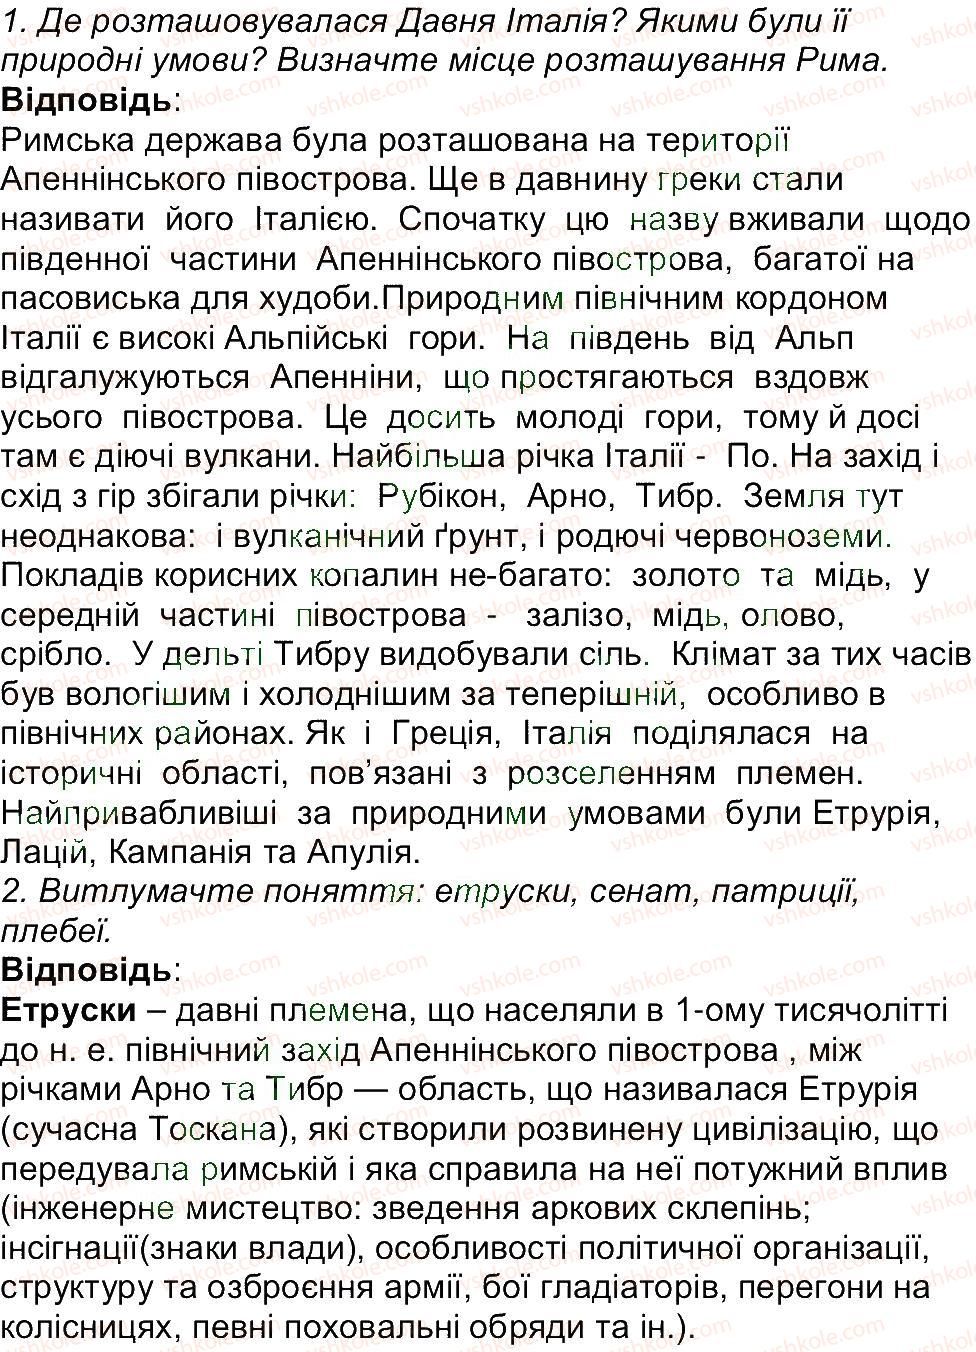 6-istoriya-og-bandrovskij-vs-vlasov-2014--storinki-201-270-208.jpg